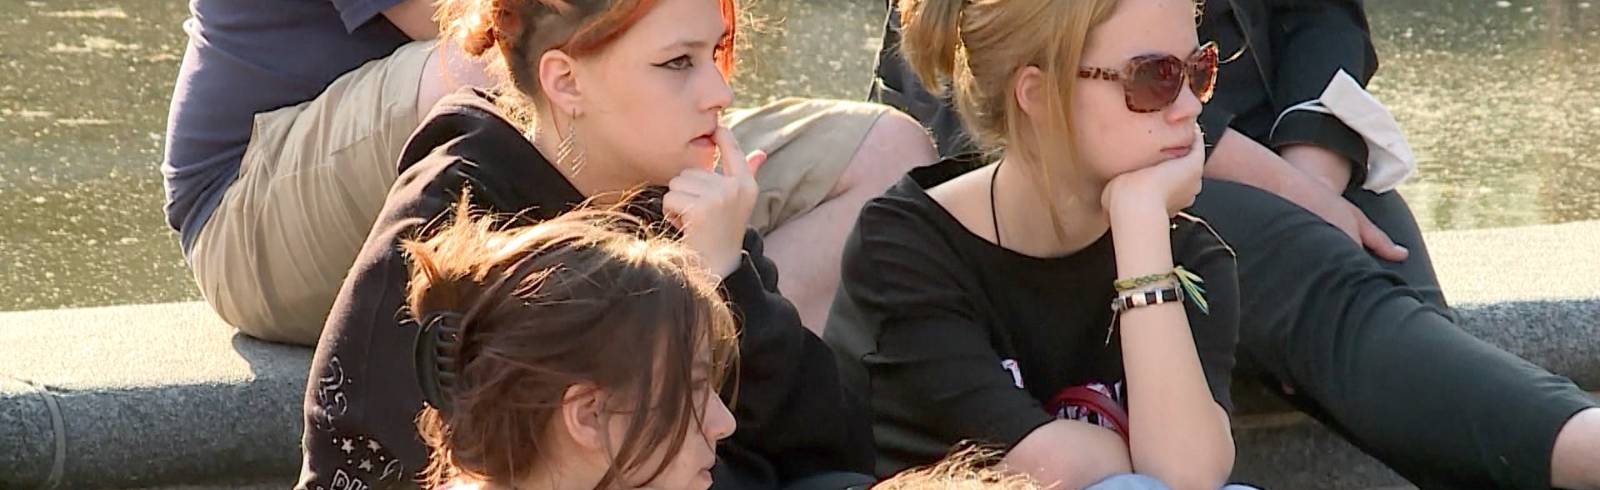 Wien lädt zu Impf-Party für Jugendliche